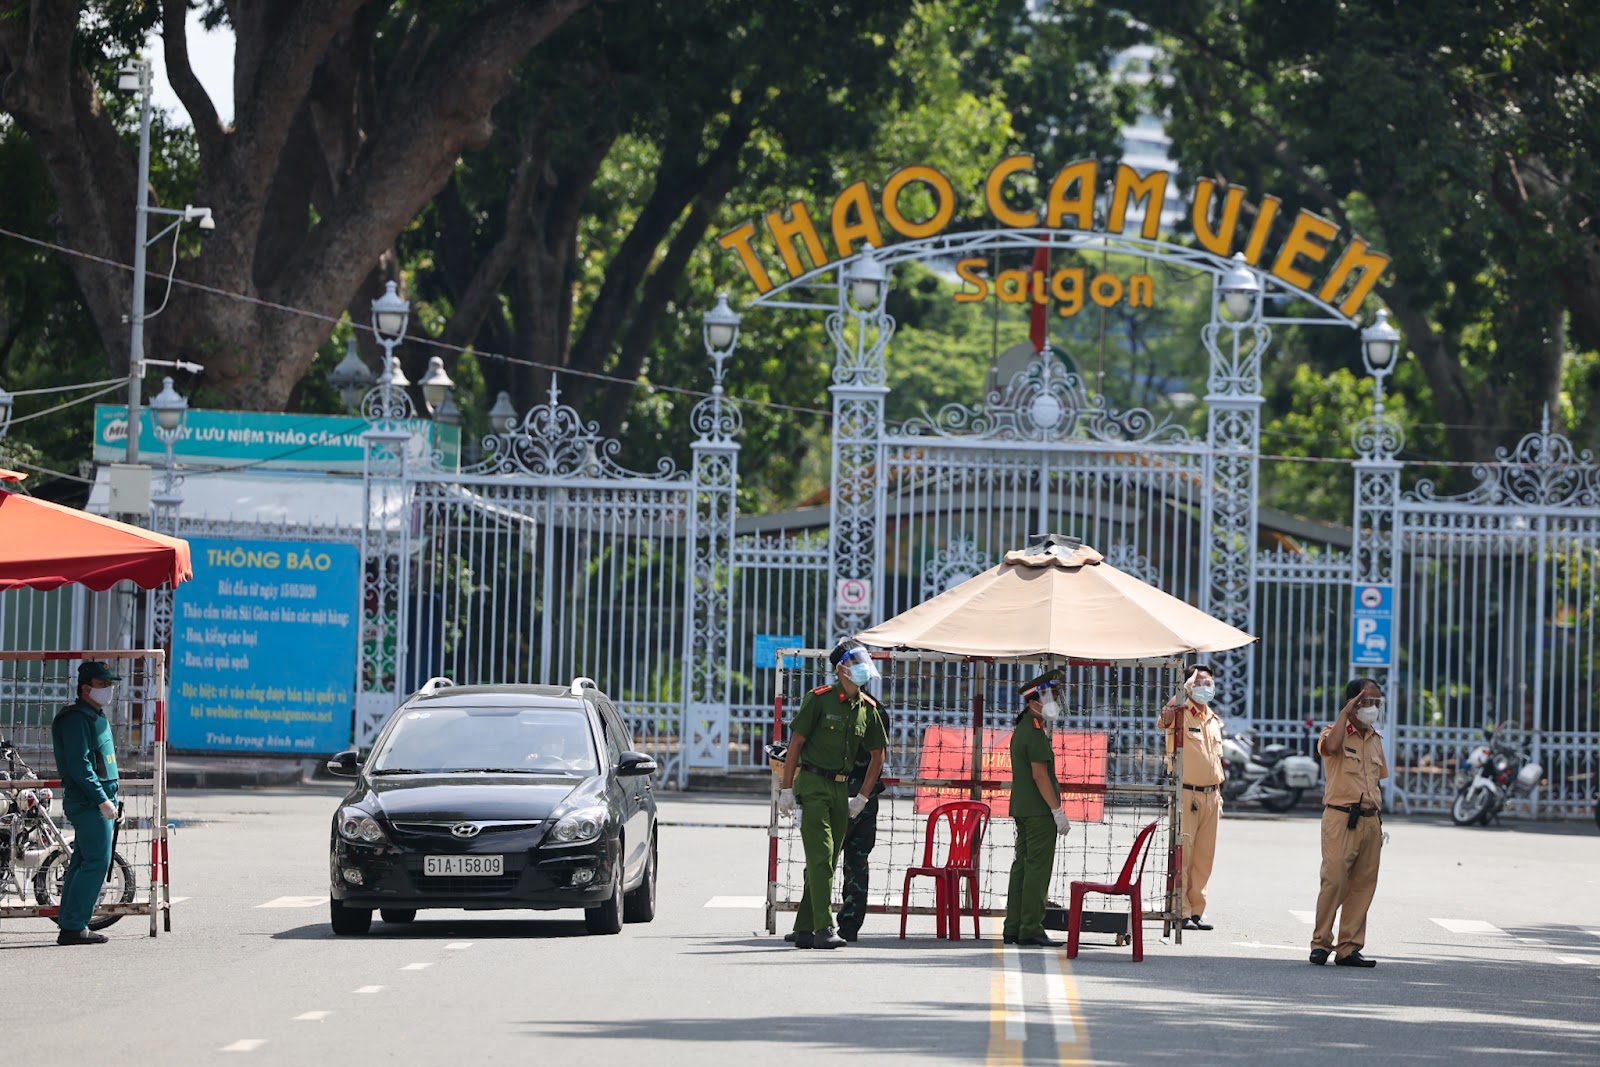 Bộ đội gác chốt tại TP.HCM ngày đầu siết giãn cách - 16